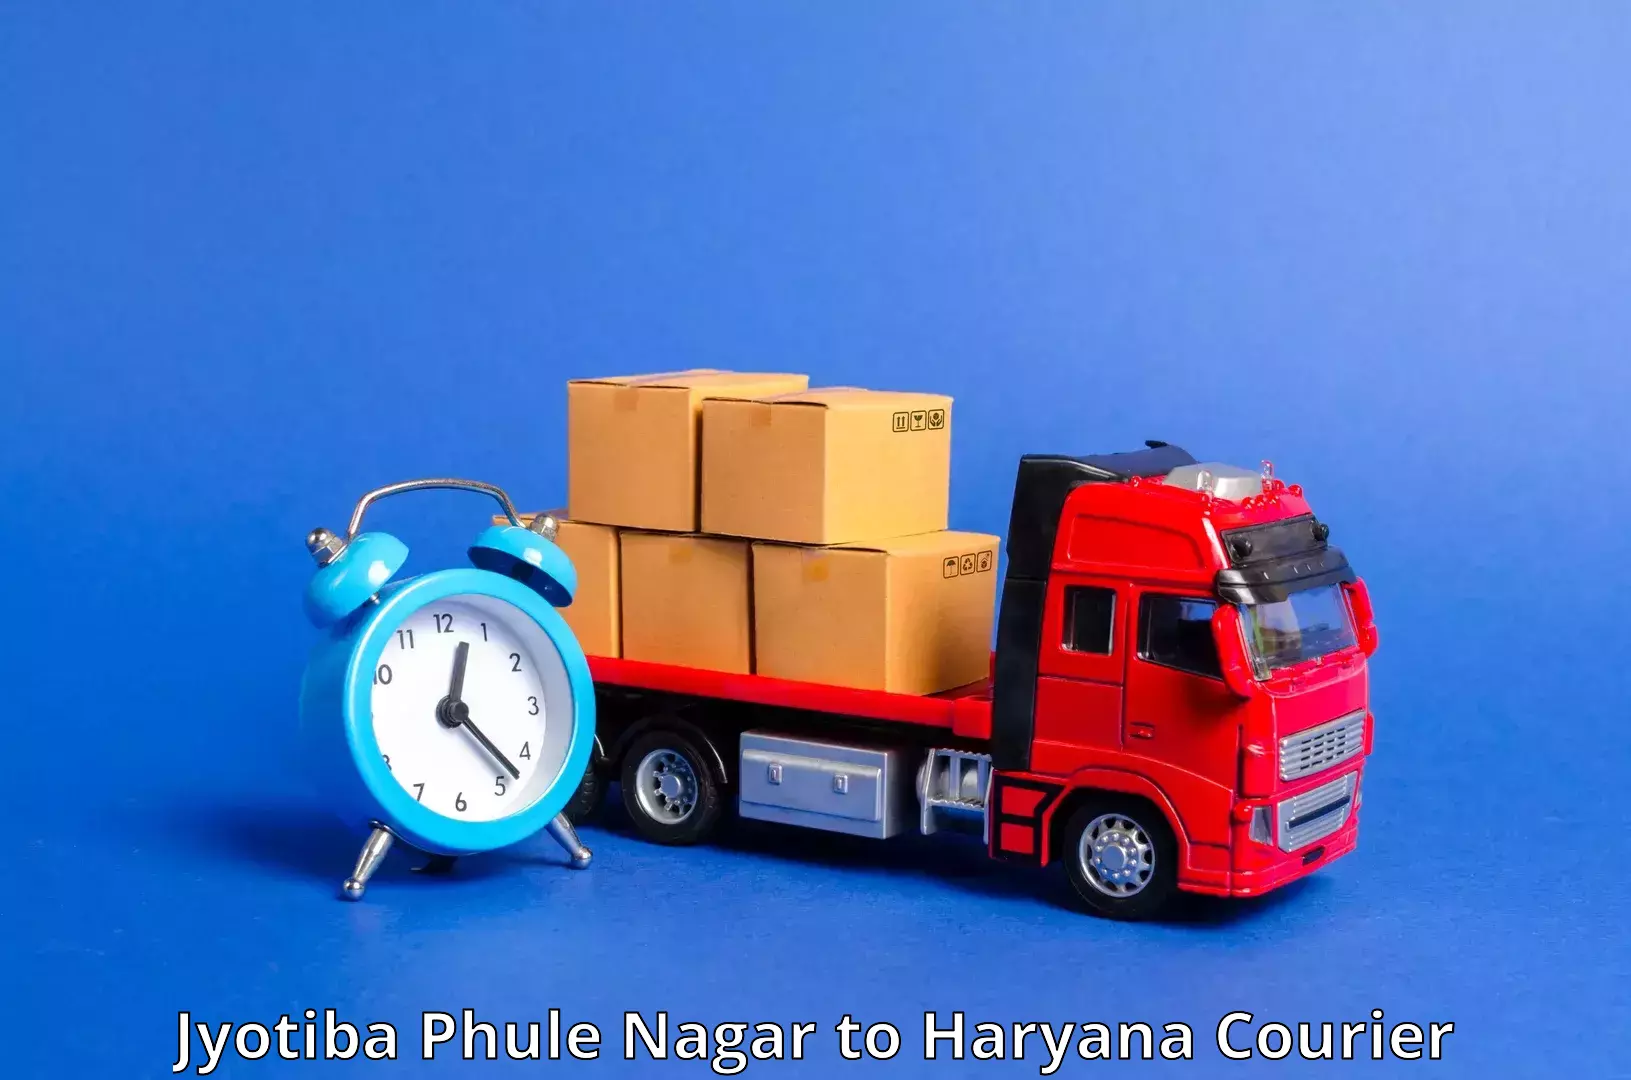 Cargo courier service Jyotiba Phule Nagar to Chaudhary Charan Singh Haryana Agricultural University Hisar